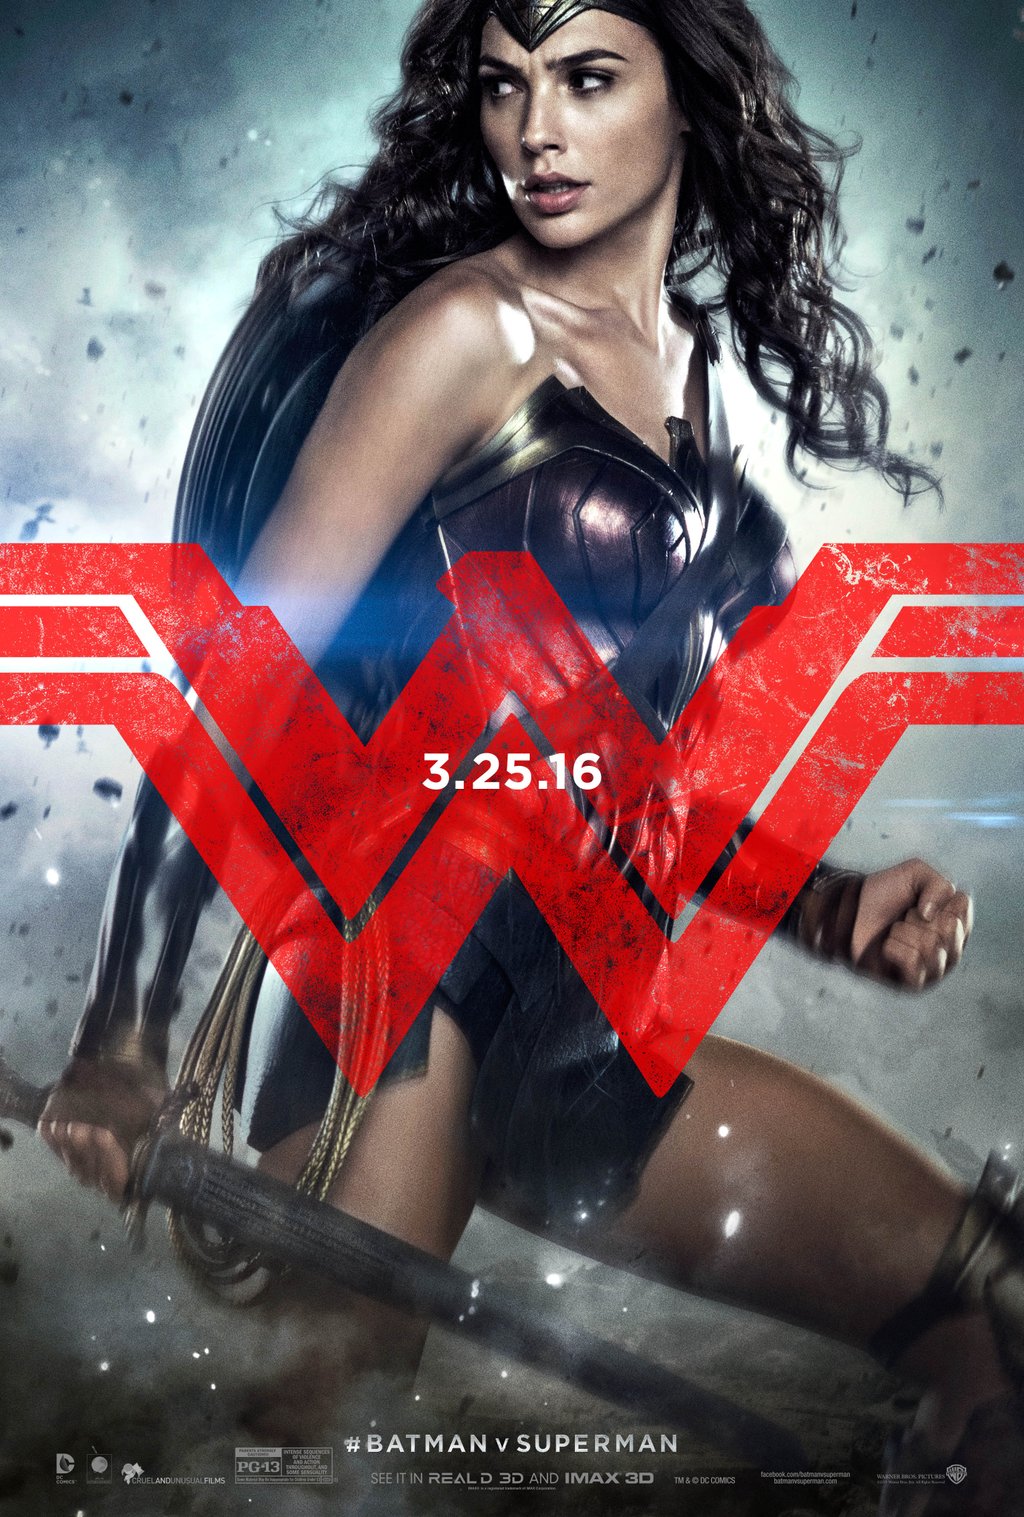  Wonder Woman: